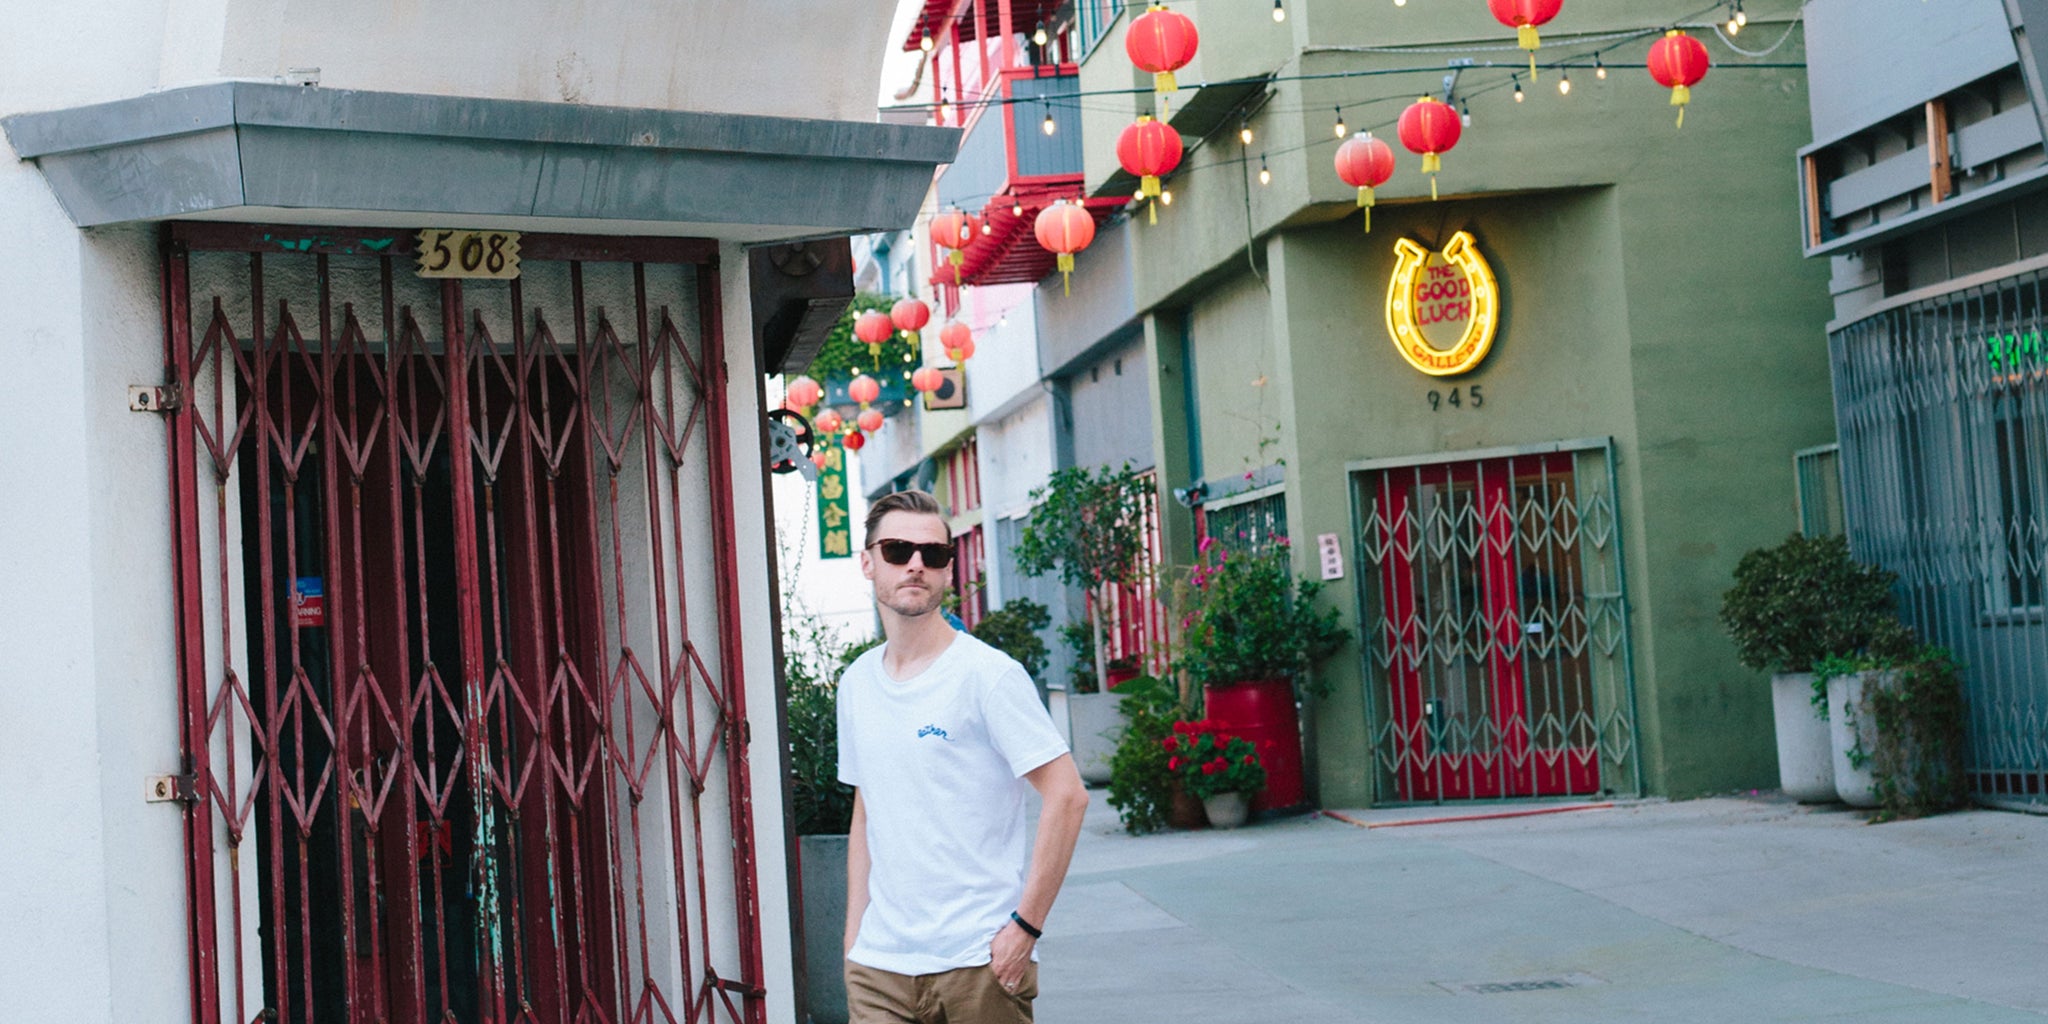 Exploring LA's Chinatown with Sean Martin